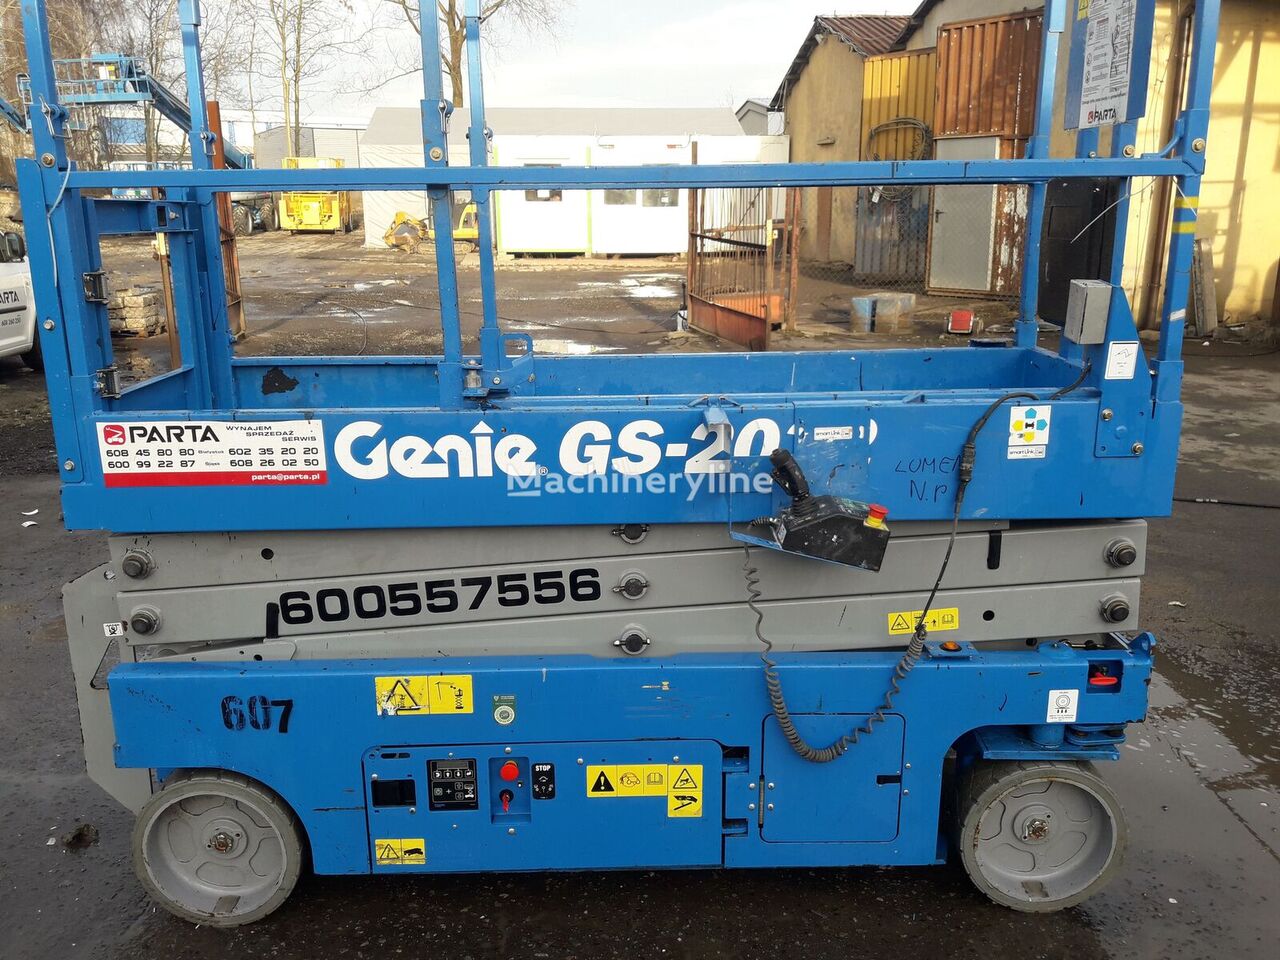 Genie GS2032 scissor lift